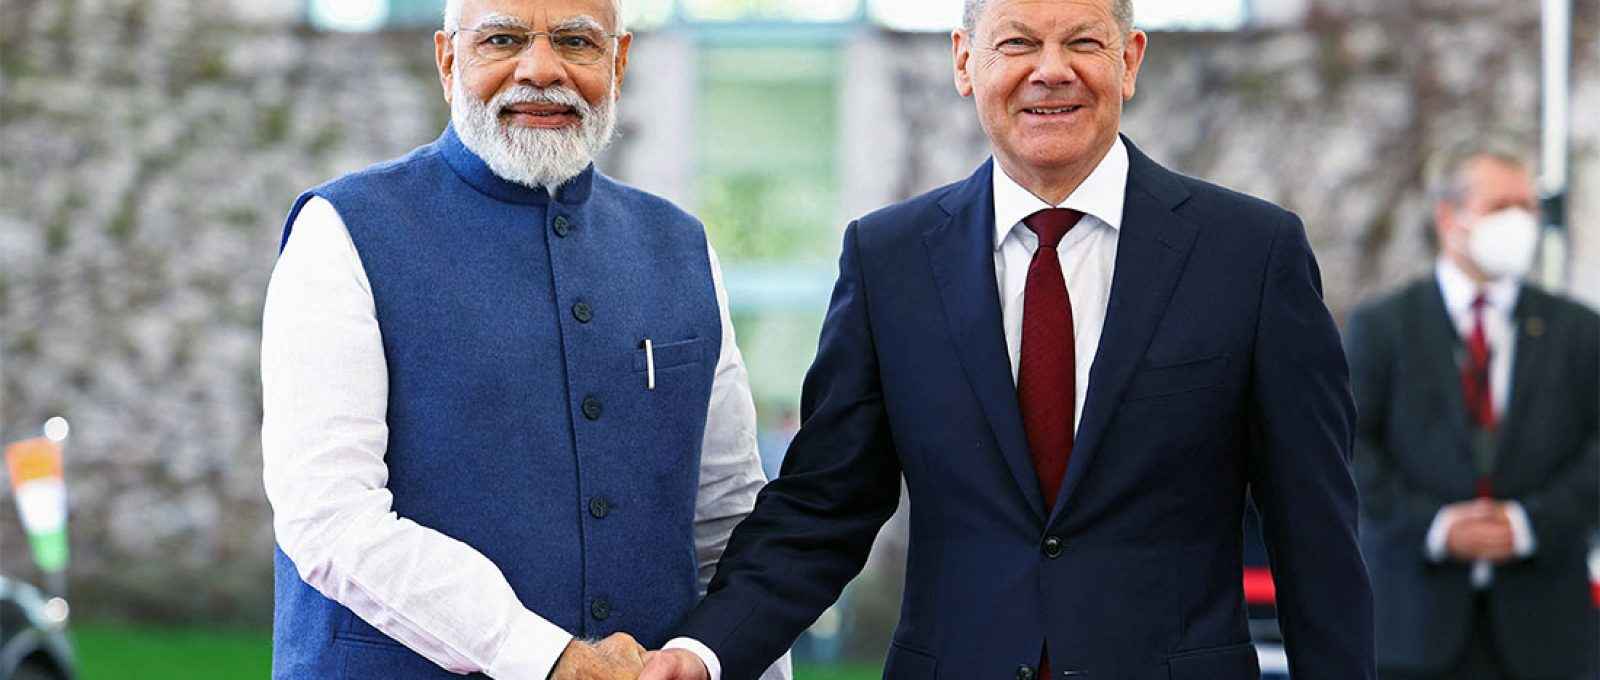 O chanceler alemão Olaf Scholz cumprimenta o primeiro-ministro indiano Narendra Modi antes da reunião de consultas intergovernamentais na Chancelaria em Berlim, em 2 de maio de 2022 (Reuters).